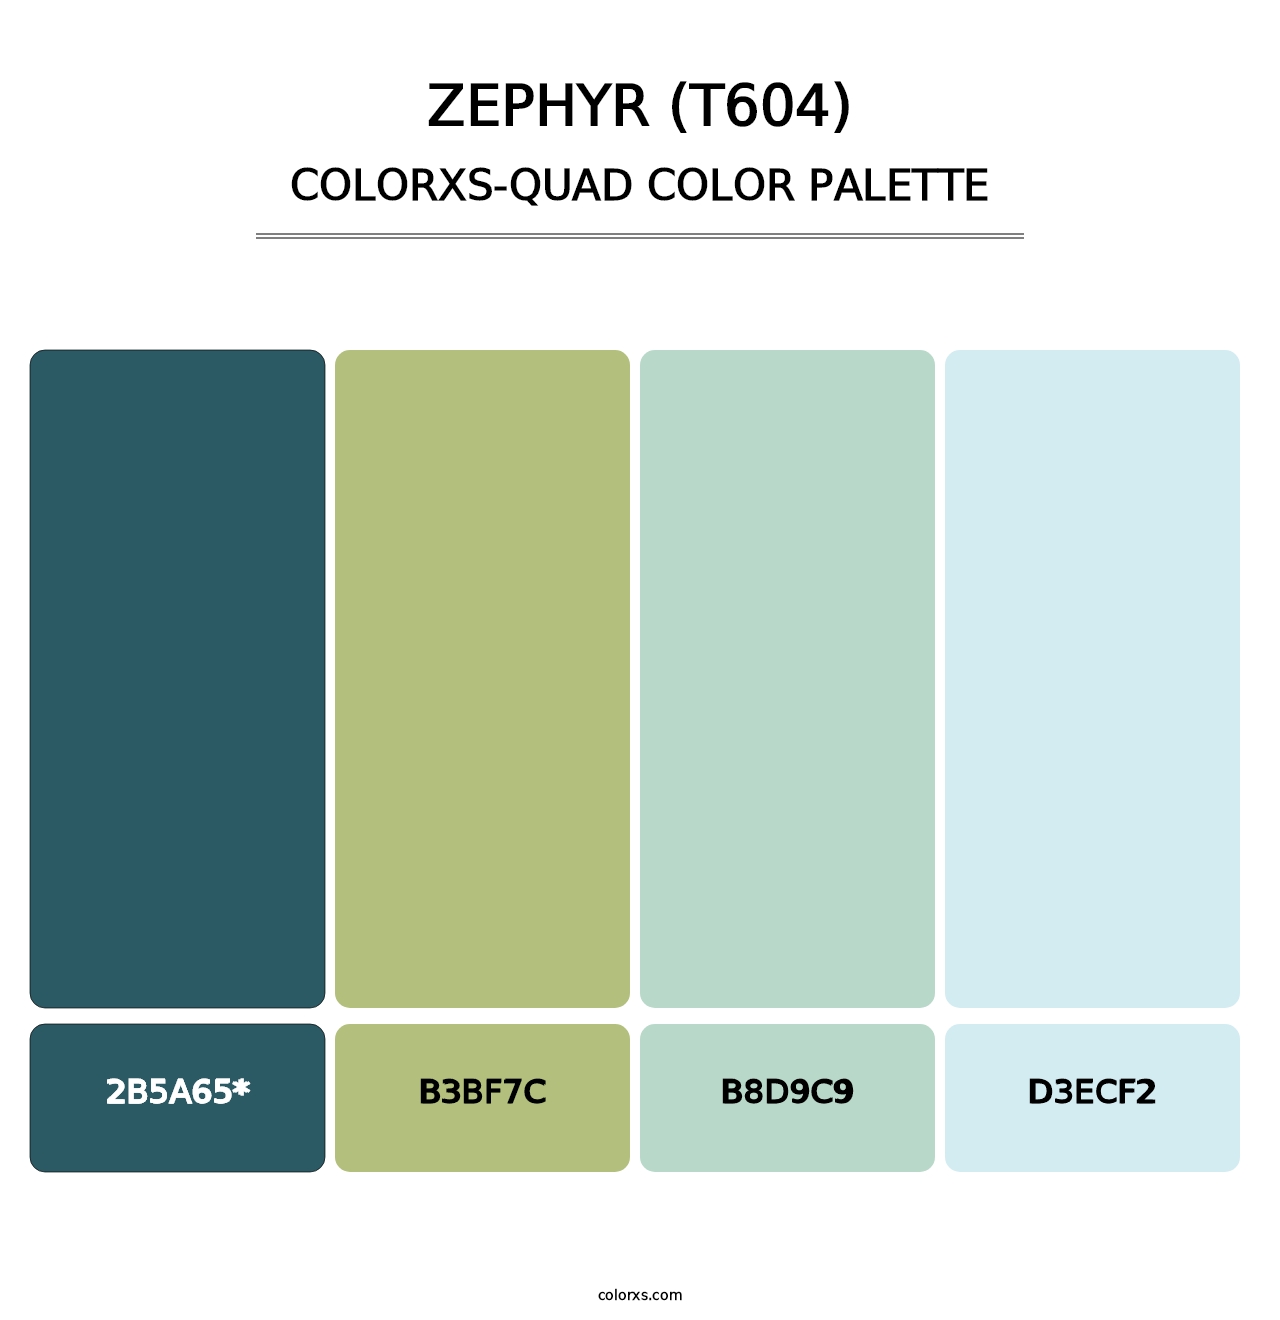 Zephyr (T604) - Colorxs Quad Palette